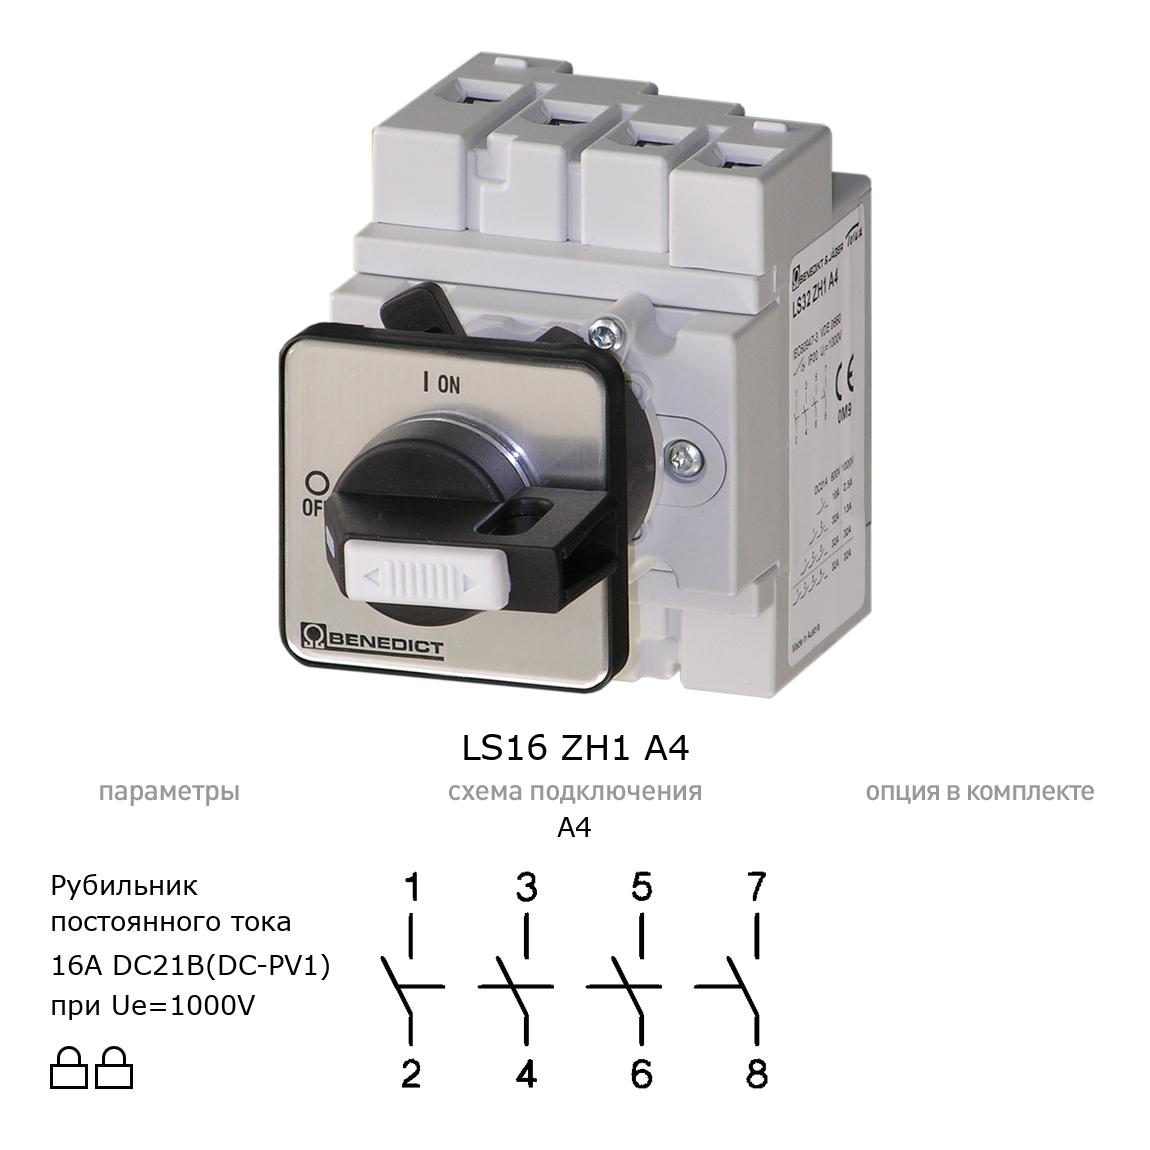 Выключатель нагрузки / рубильник для постоянного тока (DC) LS16 ZH1 A4 BENEDICT